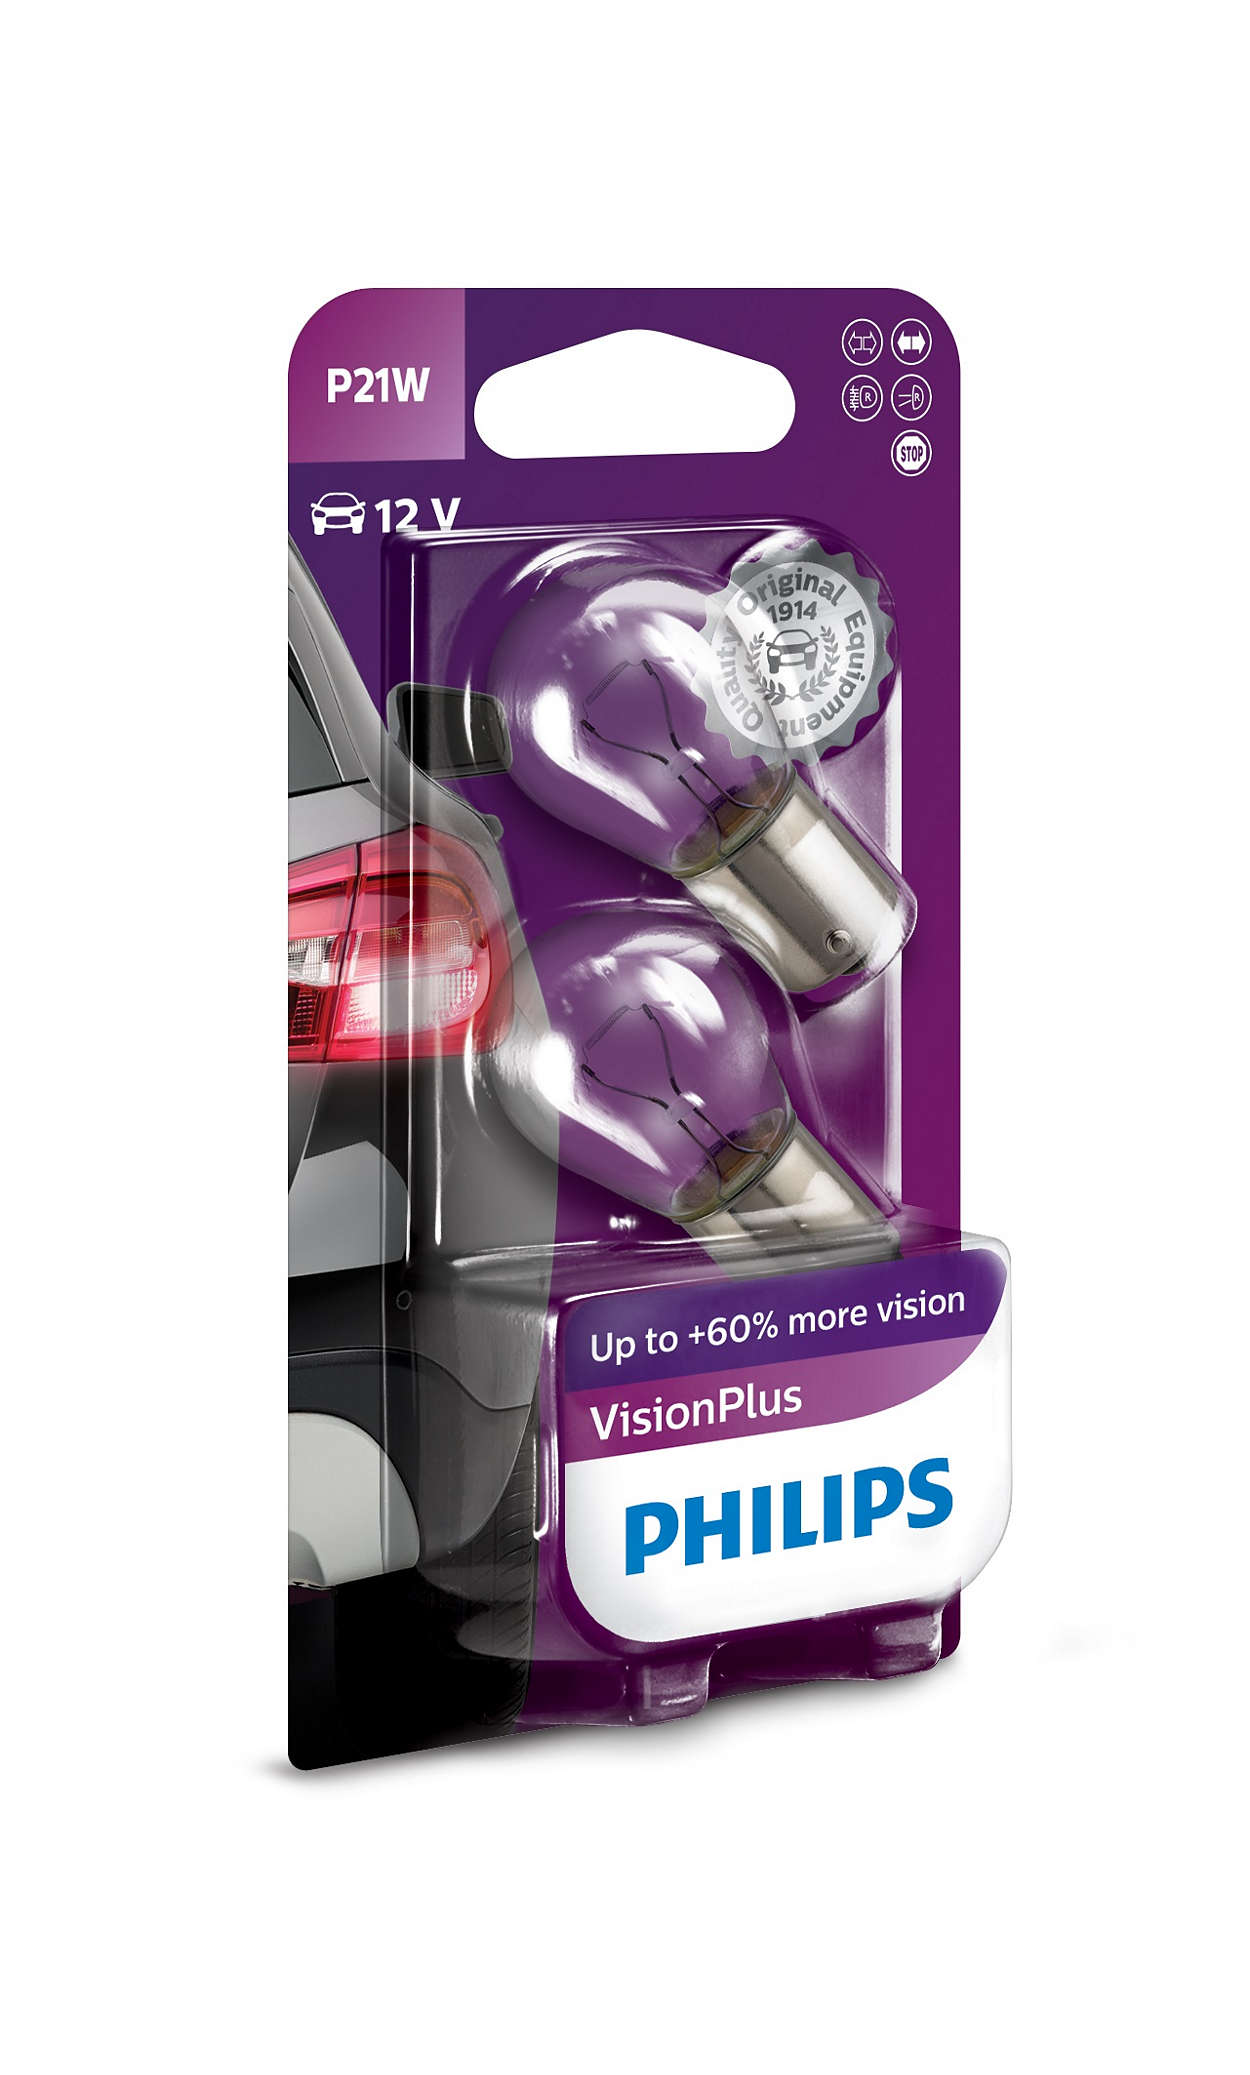 Philips VisionPlus BA15S / P21W 12V - Set